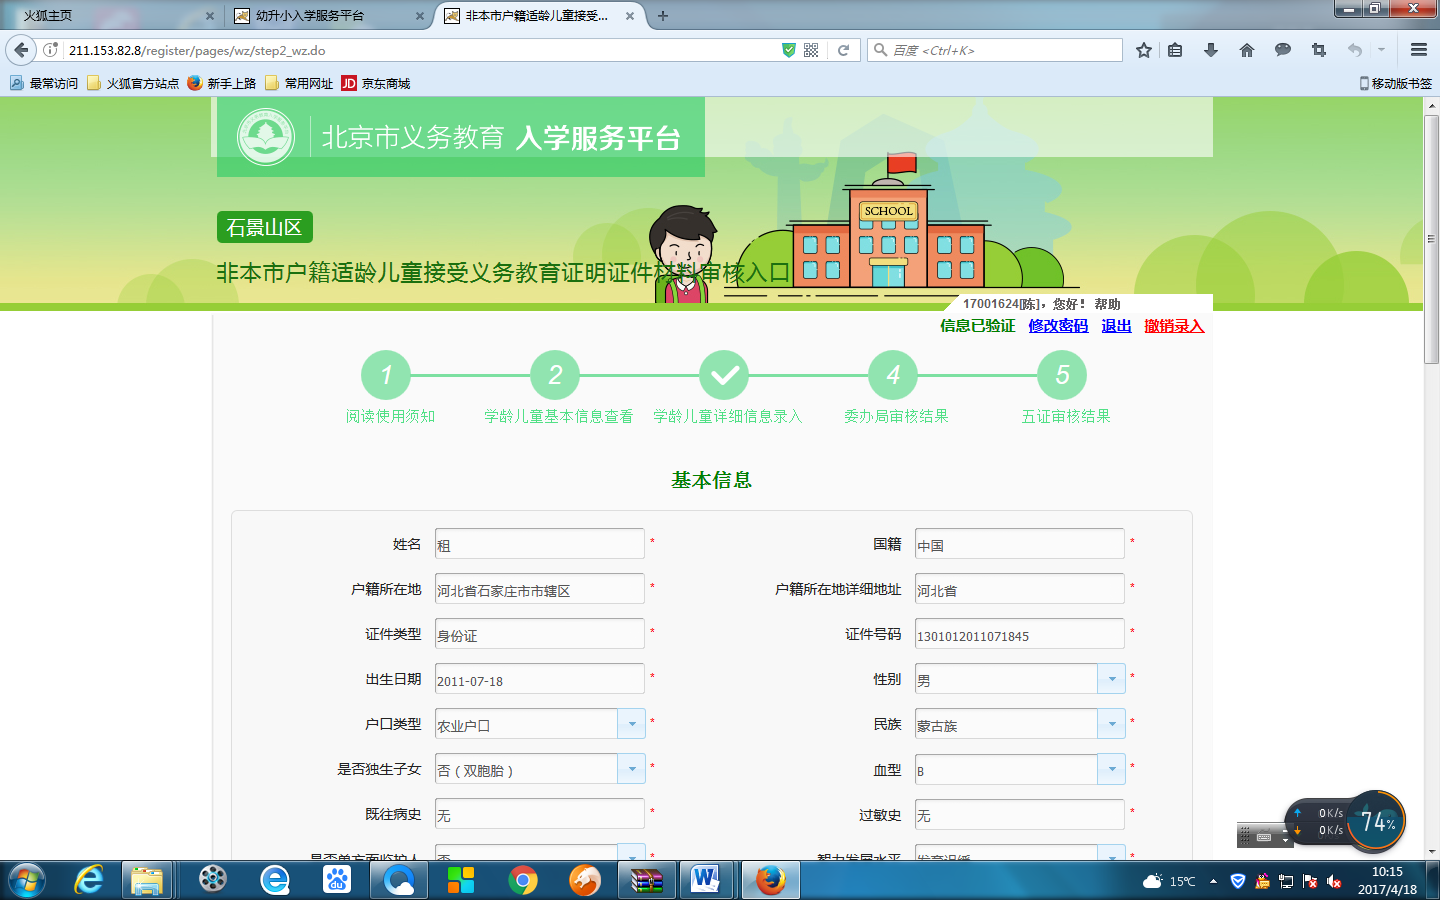 非北京市户籍适龄儿童入学信息采集流程图6